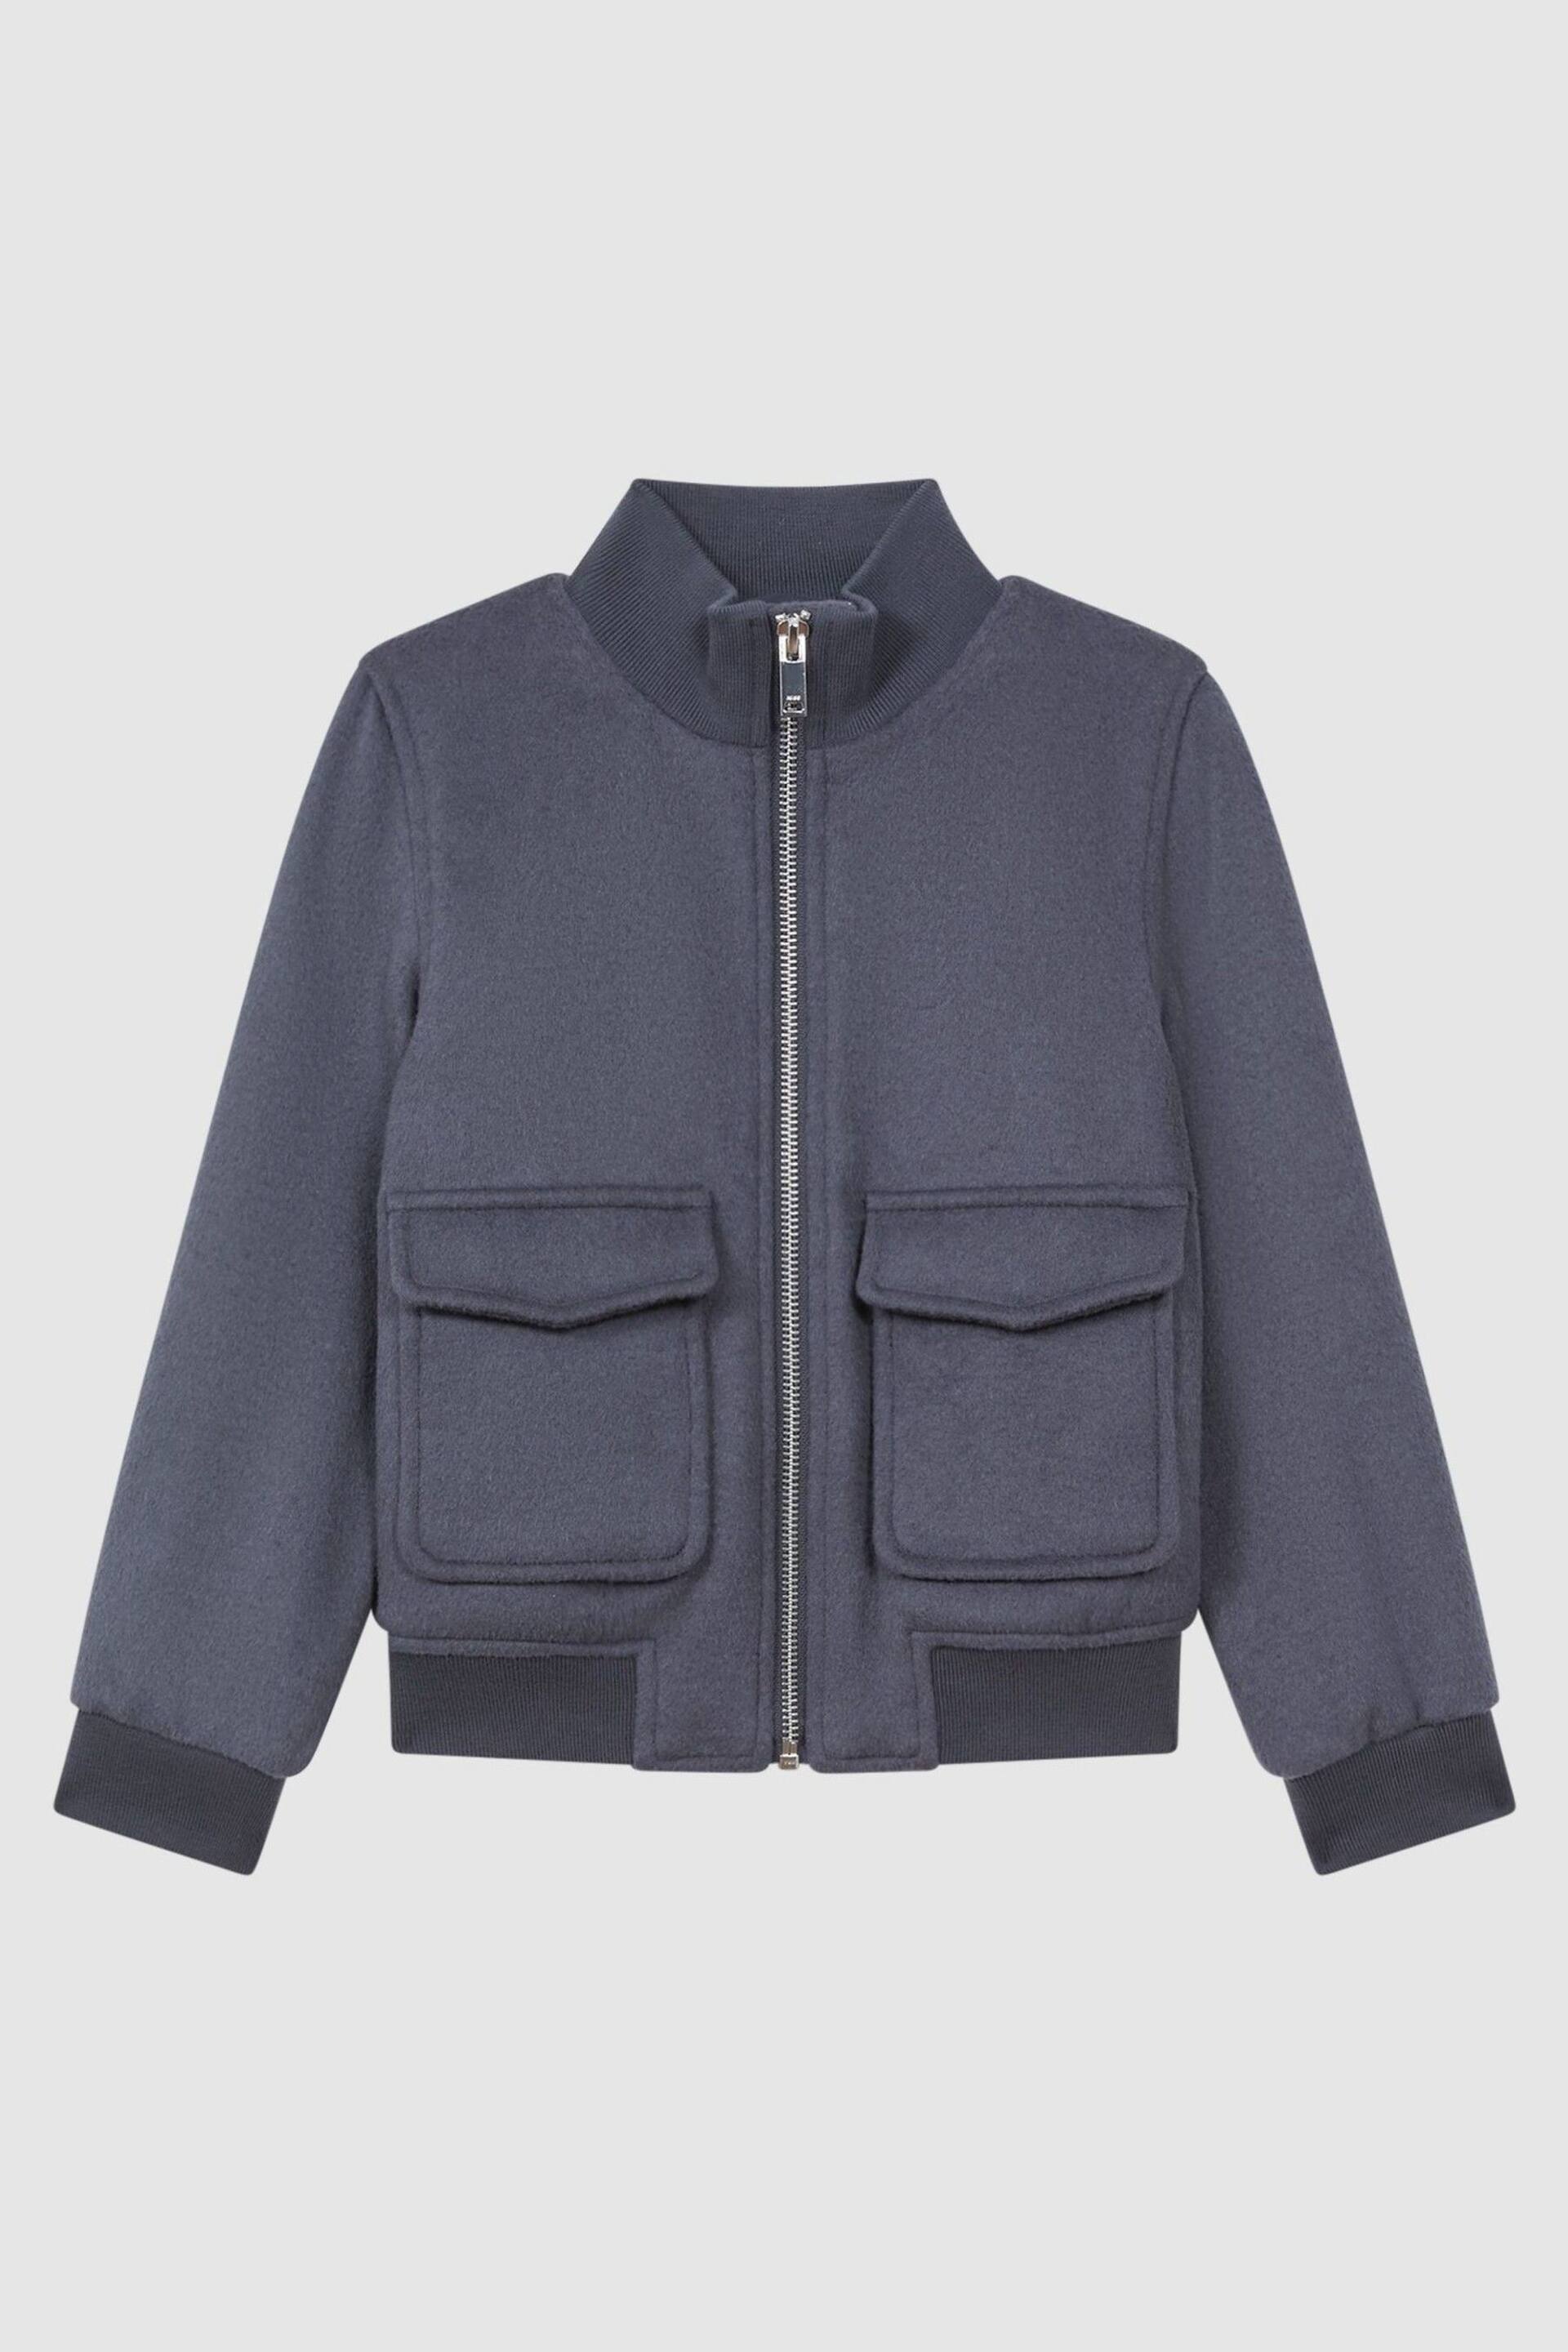 Reiss Airforce Blue Shuffle Senior Wool Blend Zip-Through Jacket - Image 2 of 6